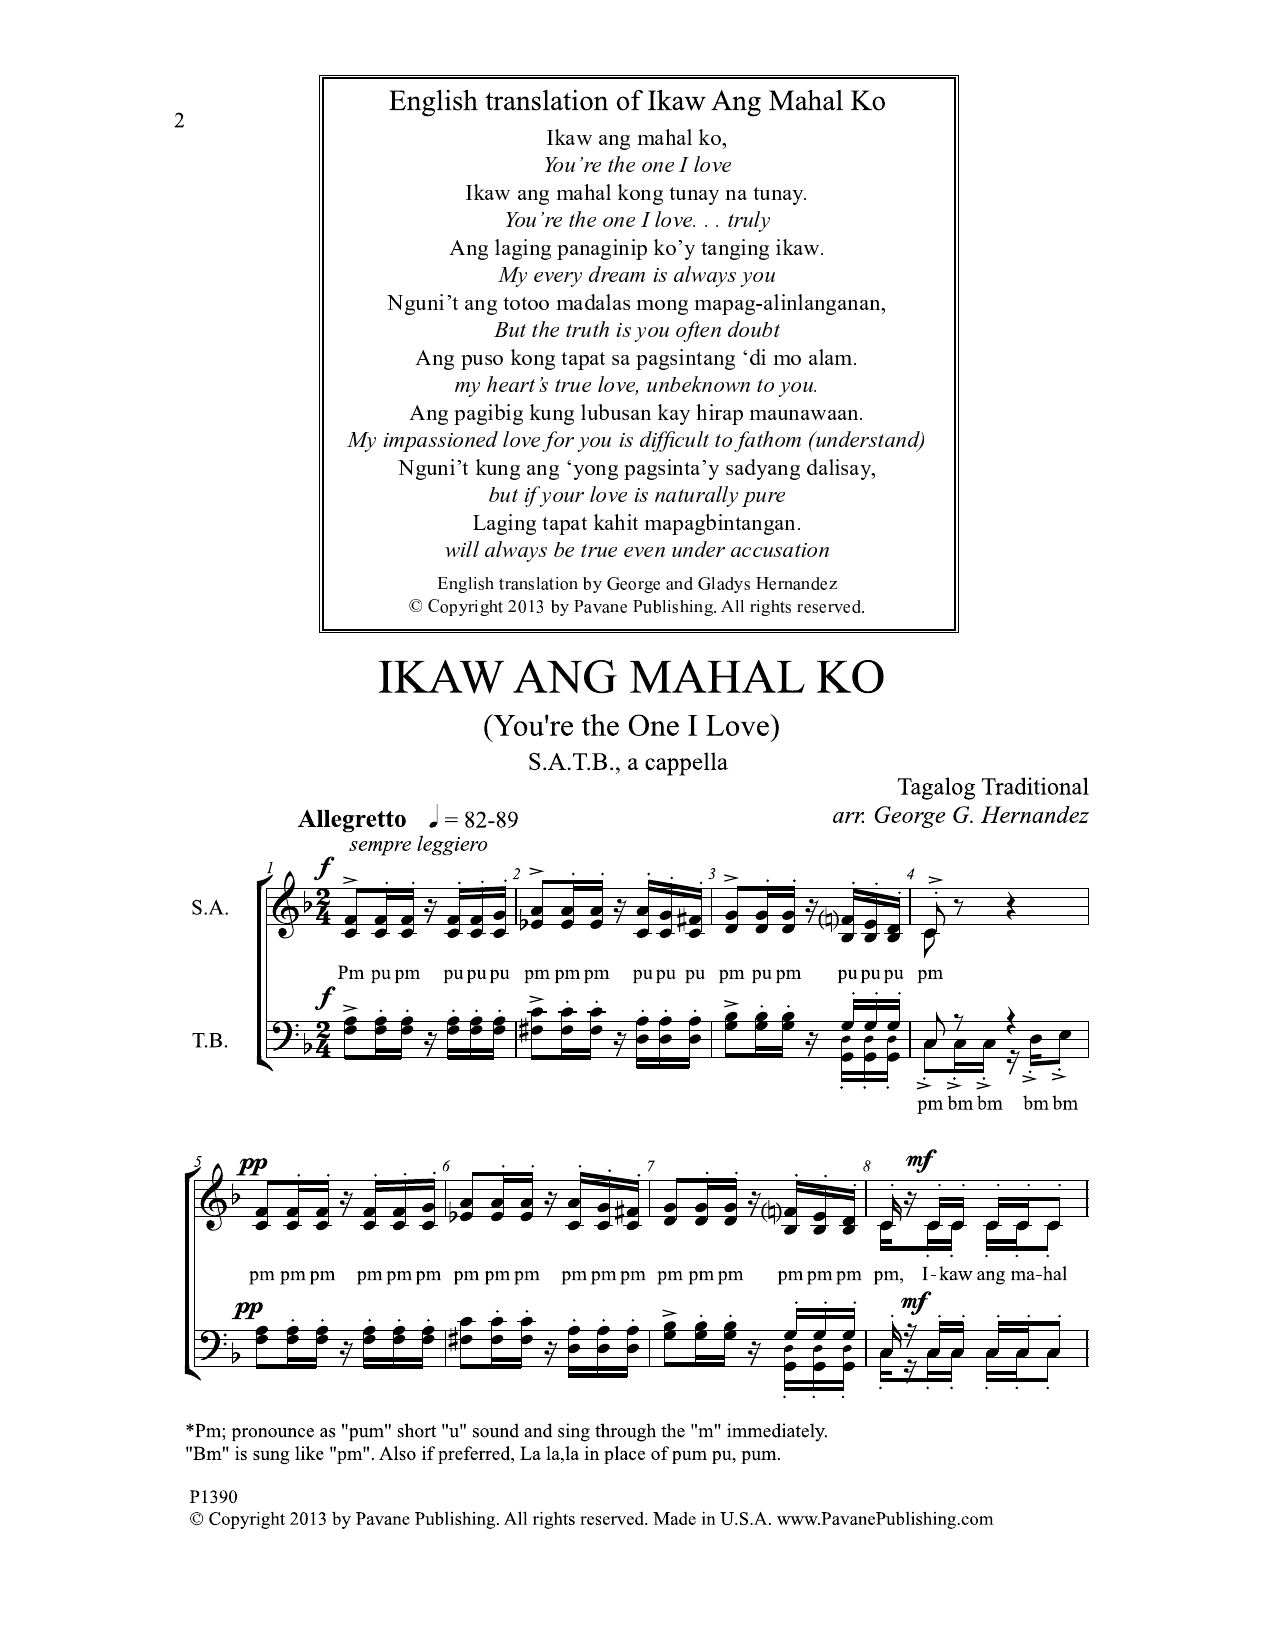 George G. Hernandez Ikaw Ang Mahal Ko Sheet Music Notes & Chords for Choral - Download or Print PDF